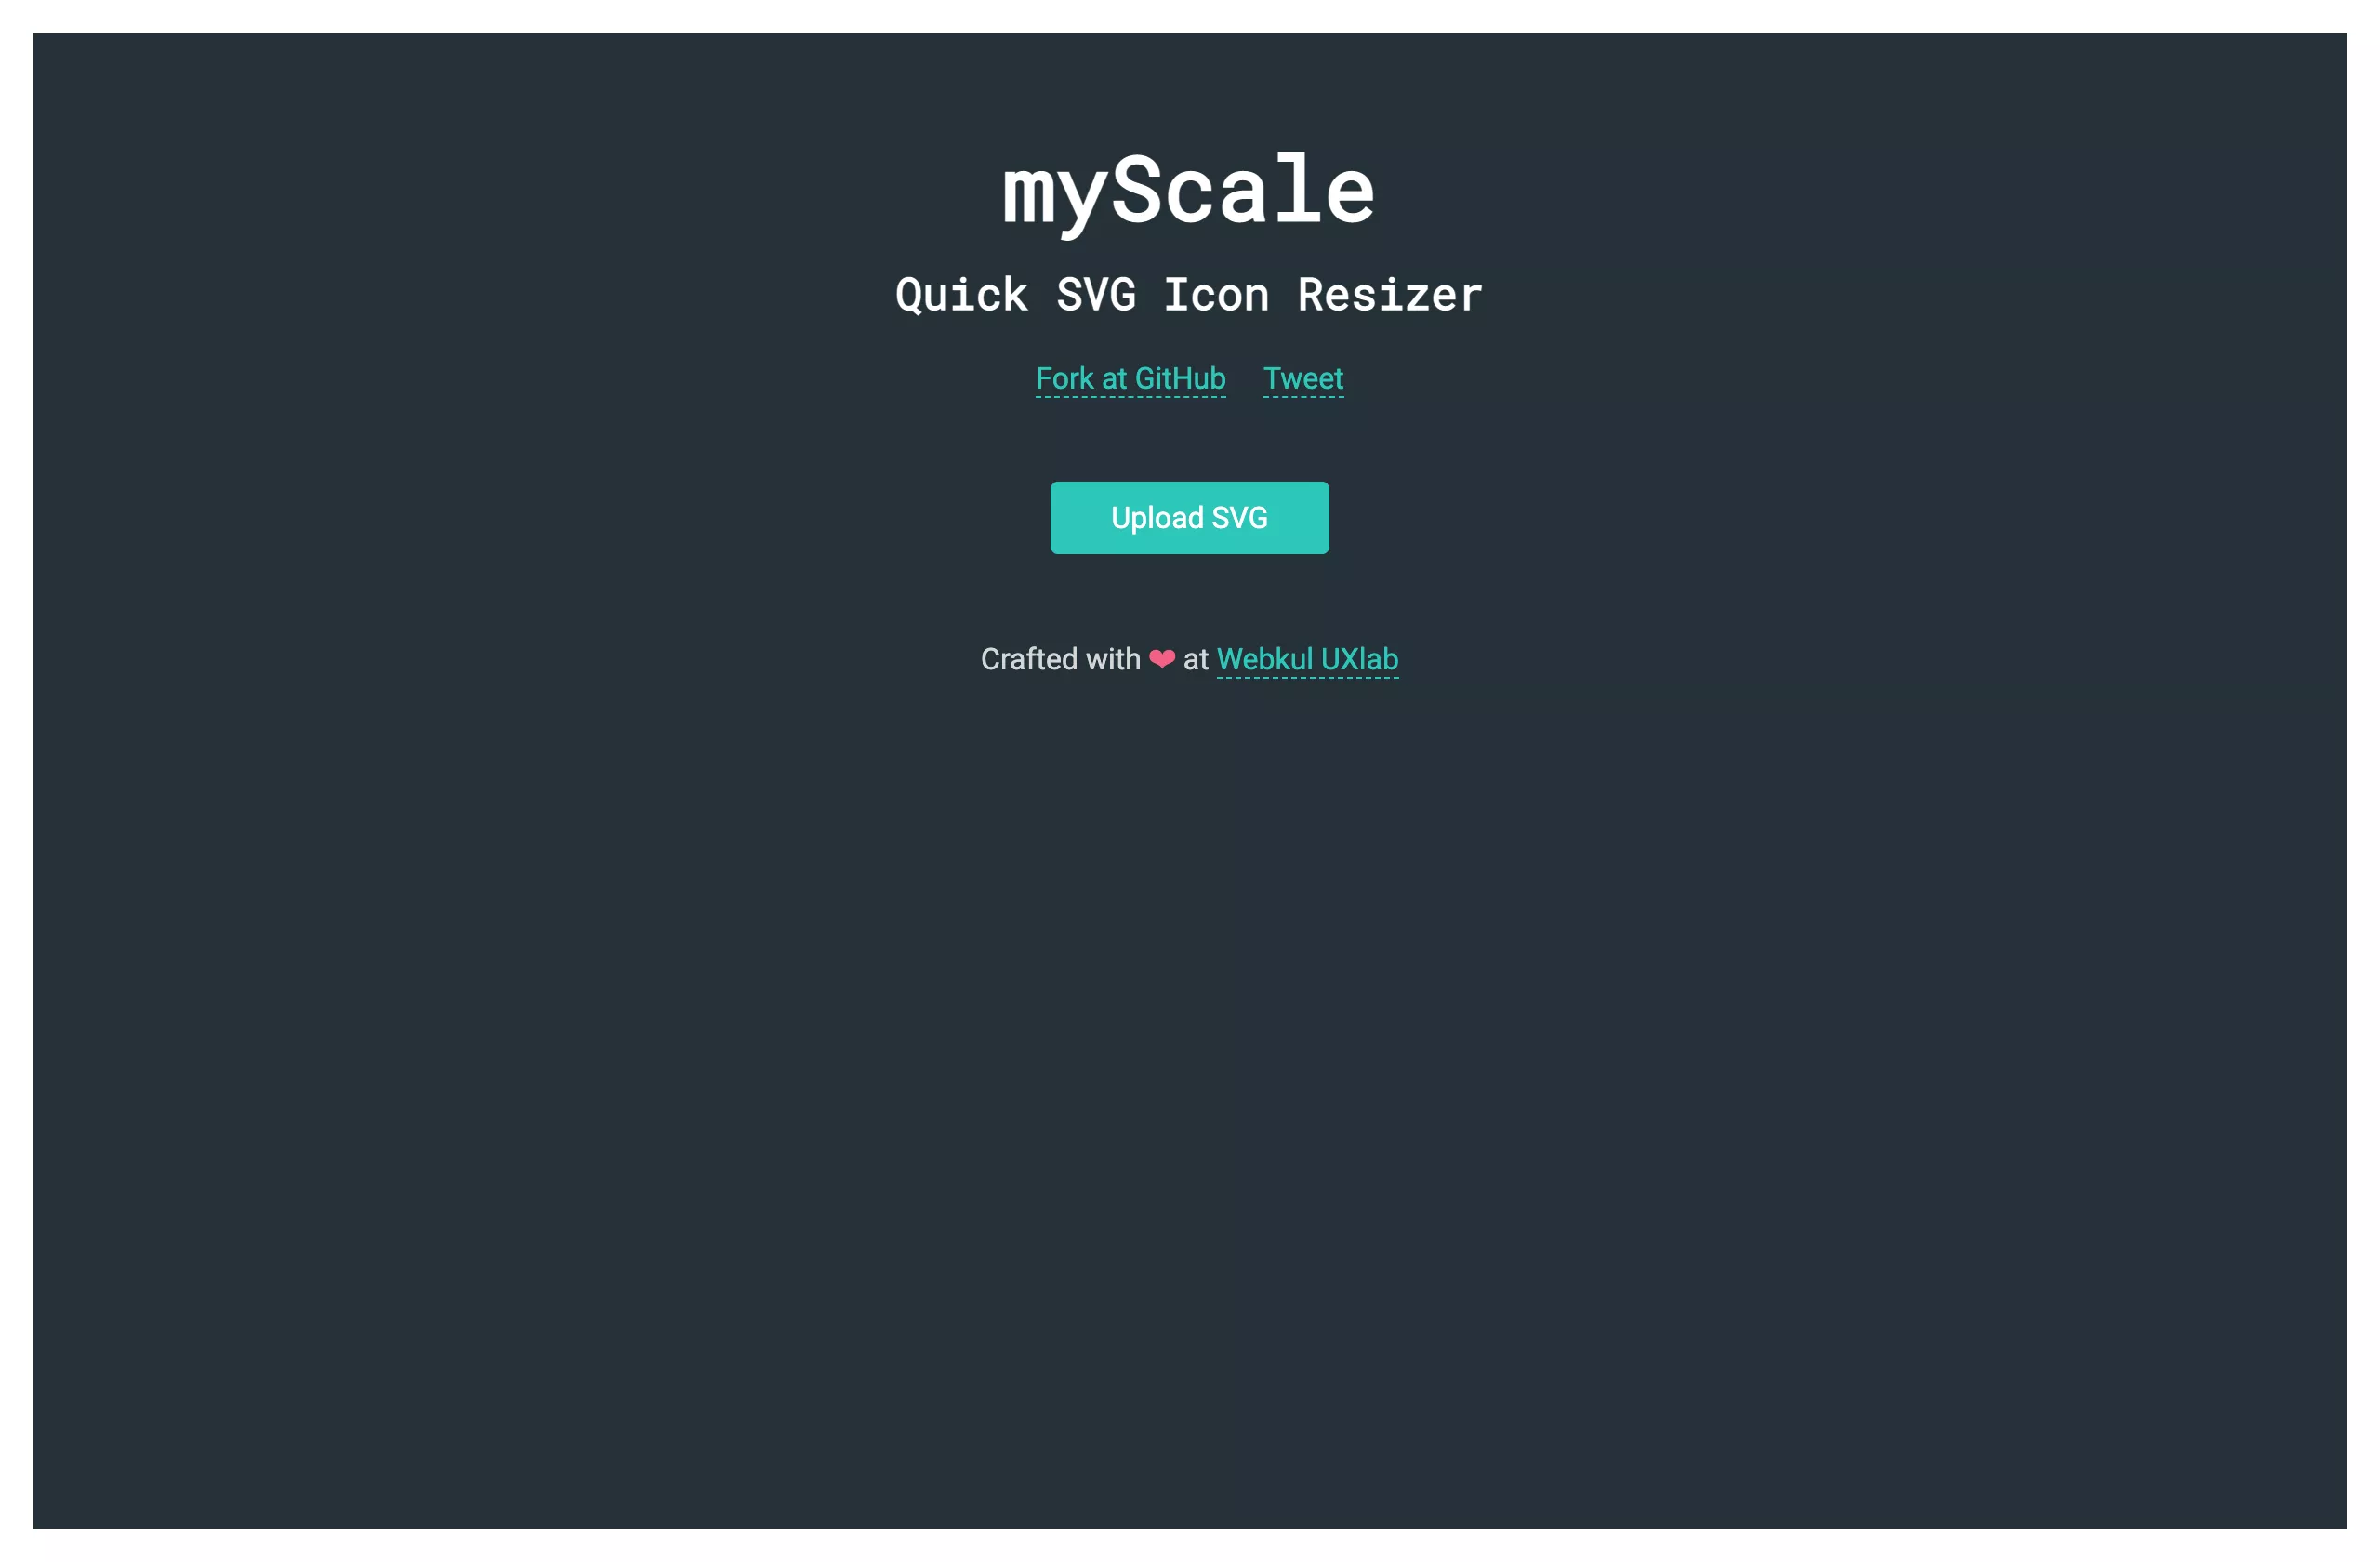 myScale